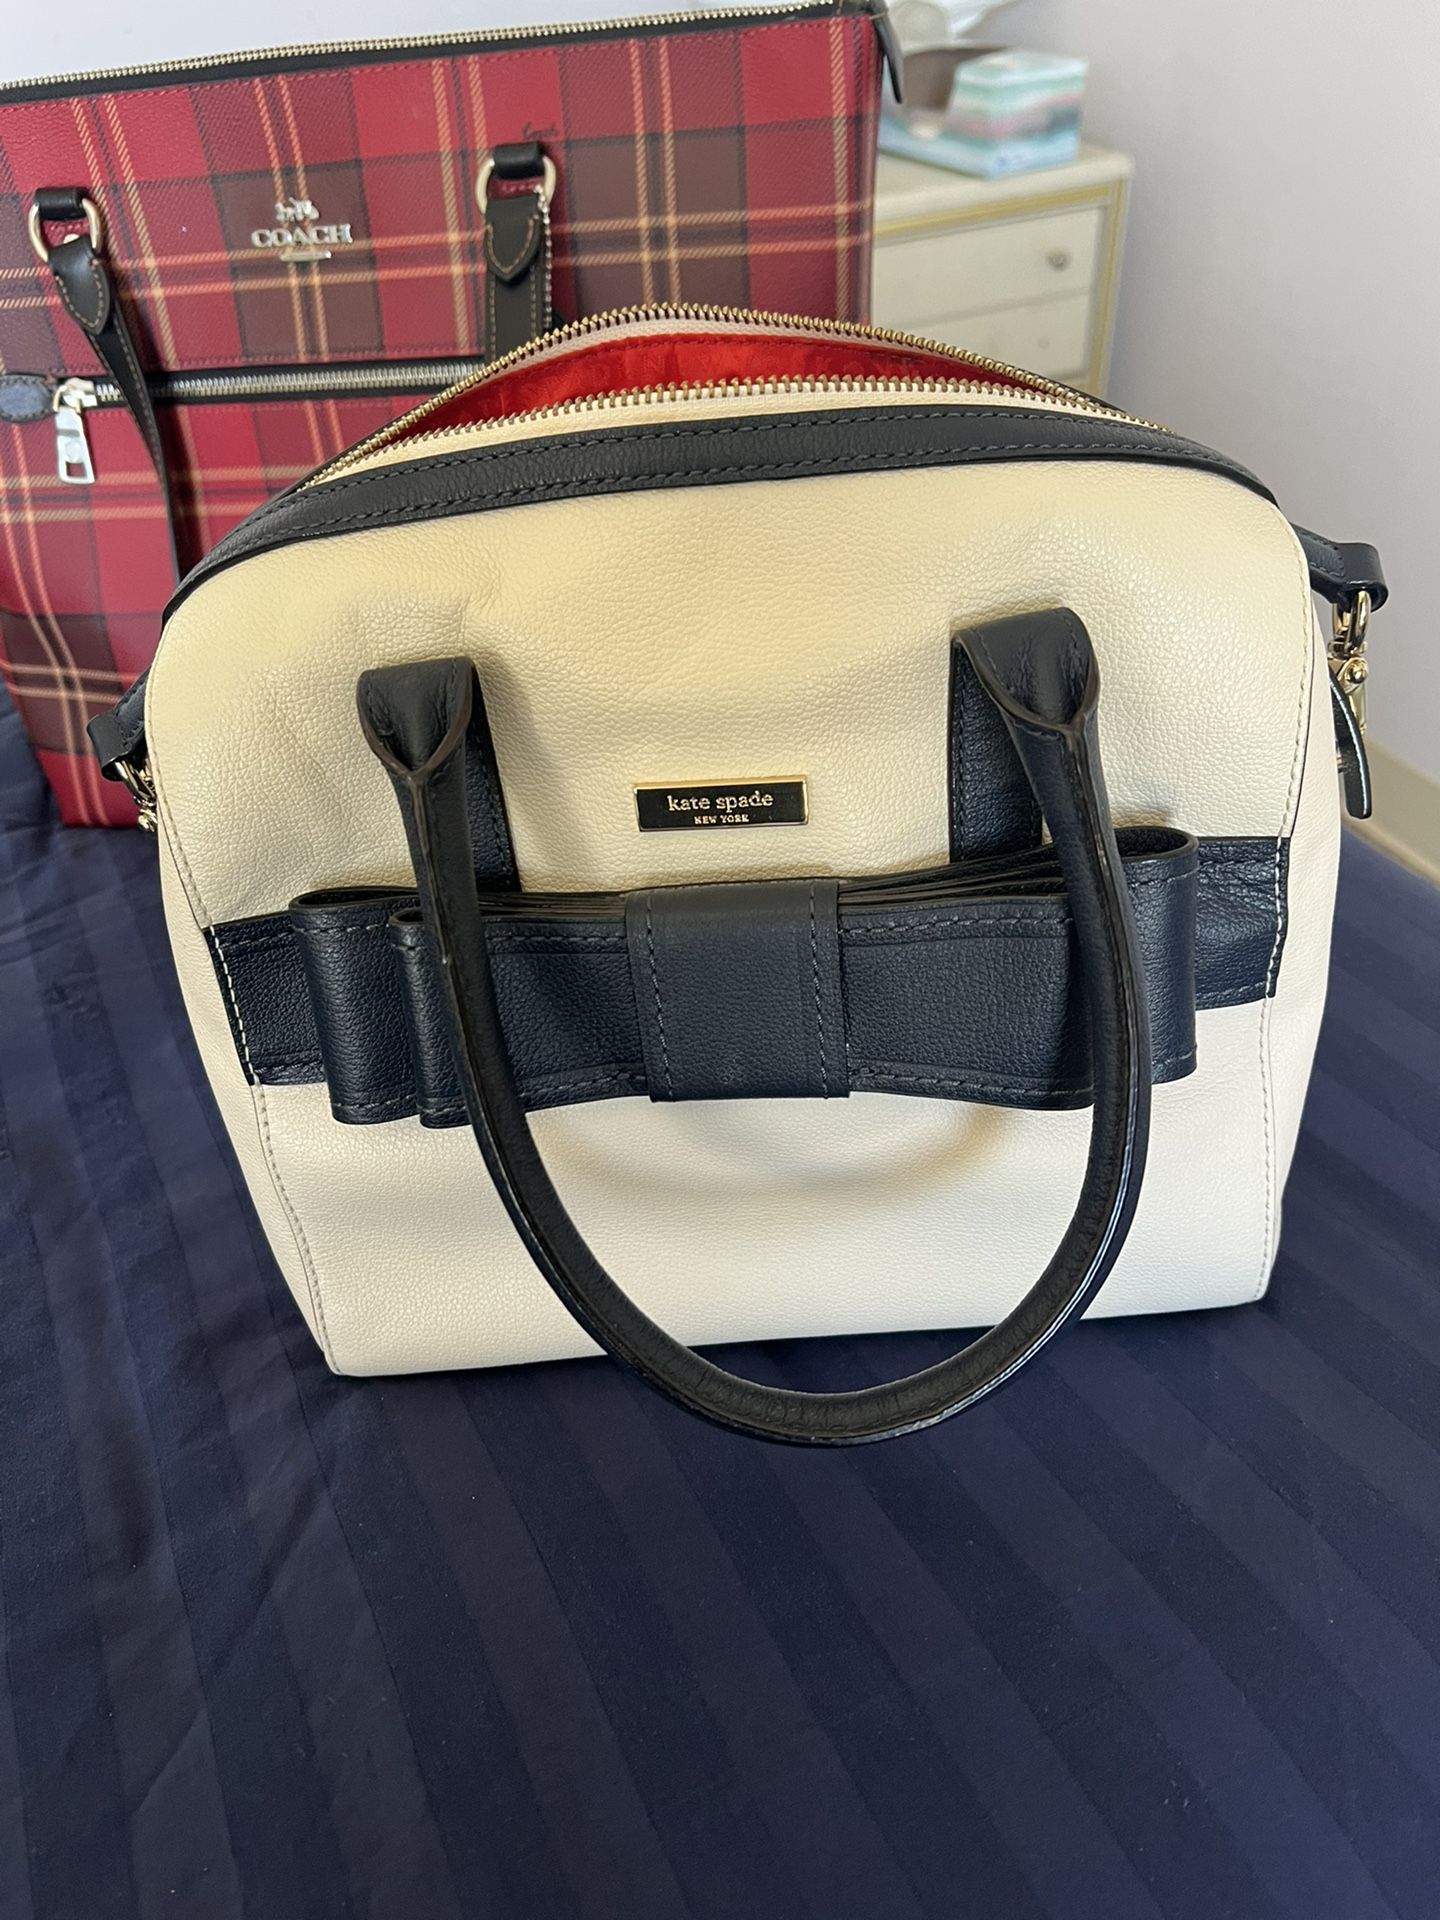 Kate Spade Handbag for Sale in Atlantic City, NJ - OfferUp